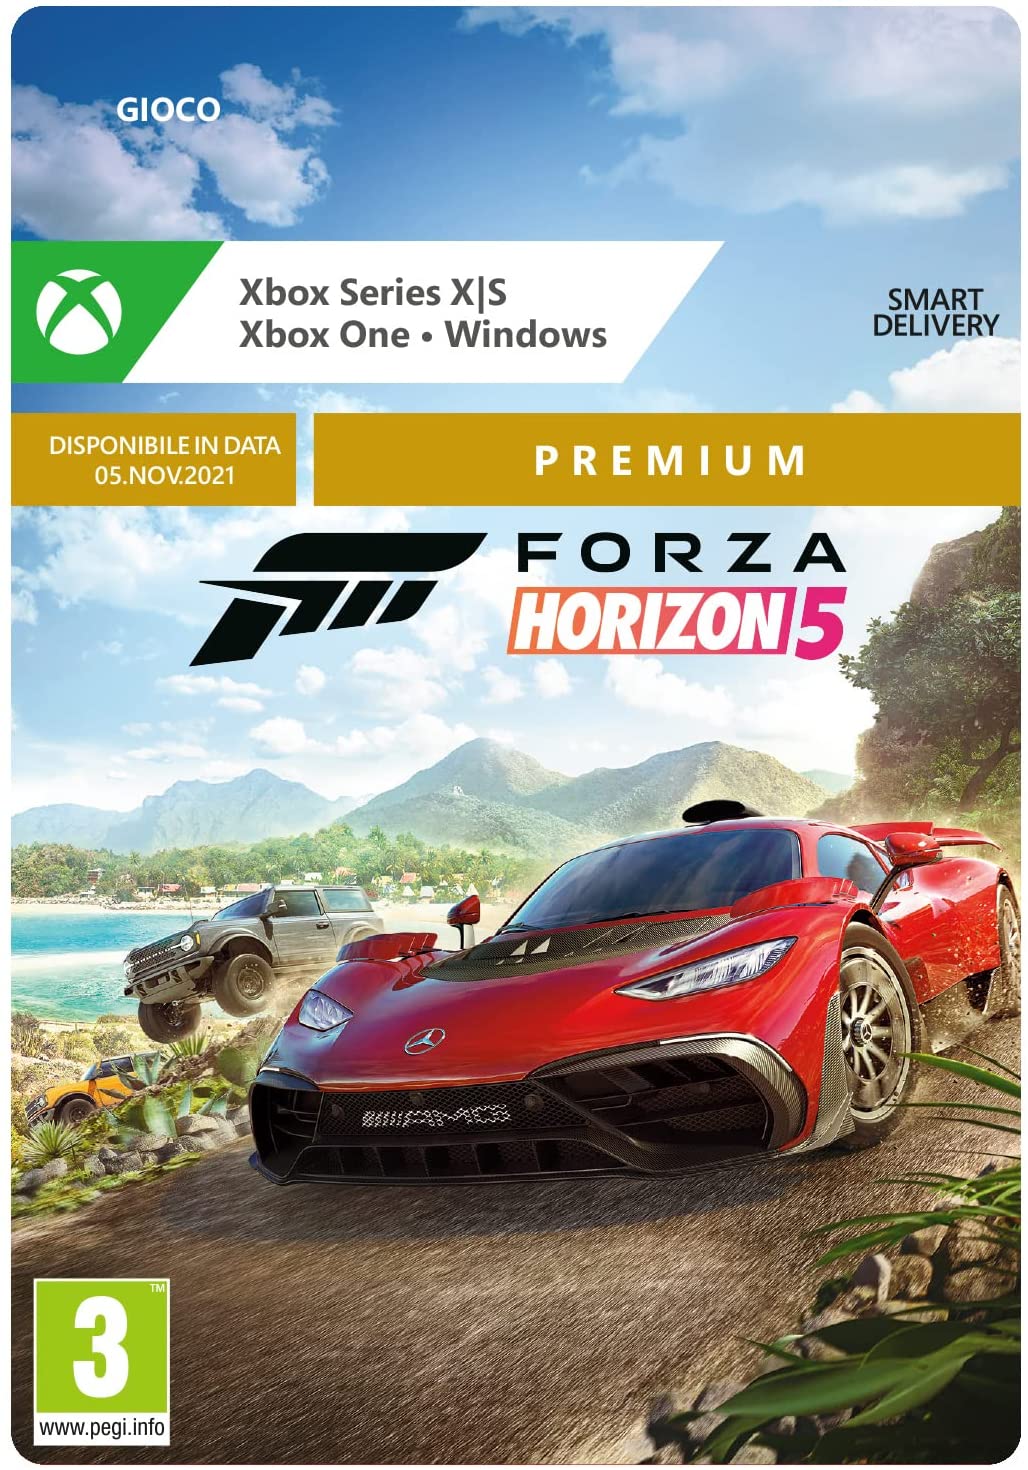 
                                    
                                Forza Horizon 5, la recensione: il primo gioco di macchine veramente next gen